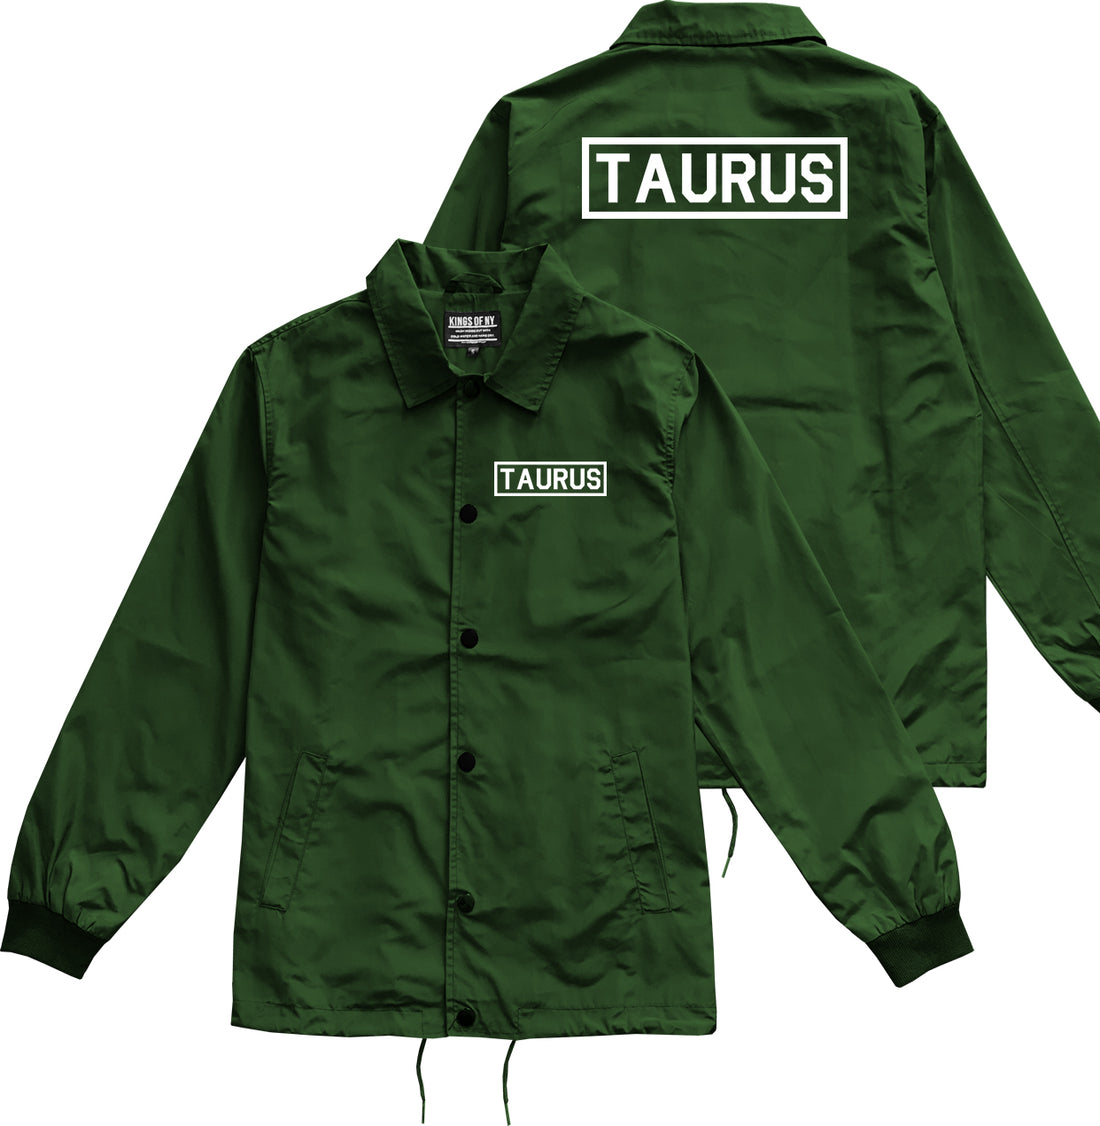 Taurus Horoscope Sign Mens Green Coaches Jacket by KINGS OF NY